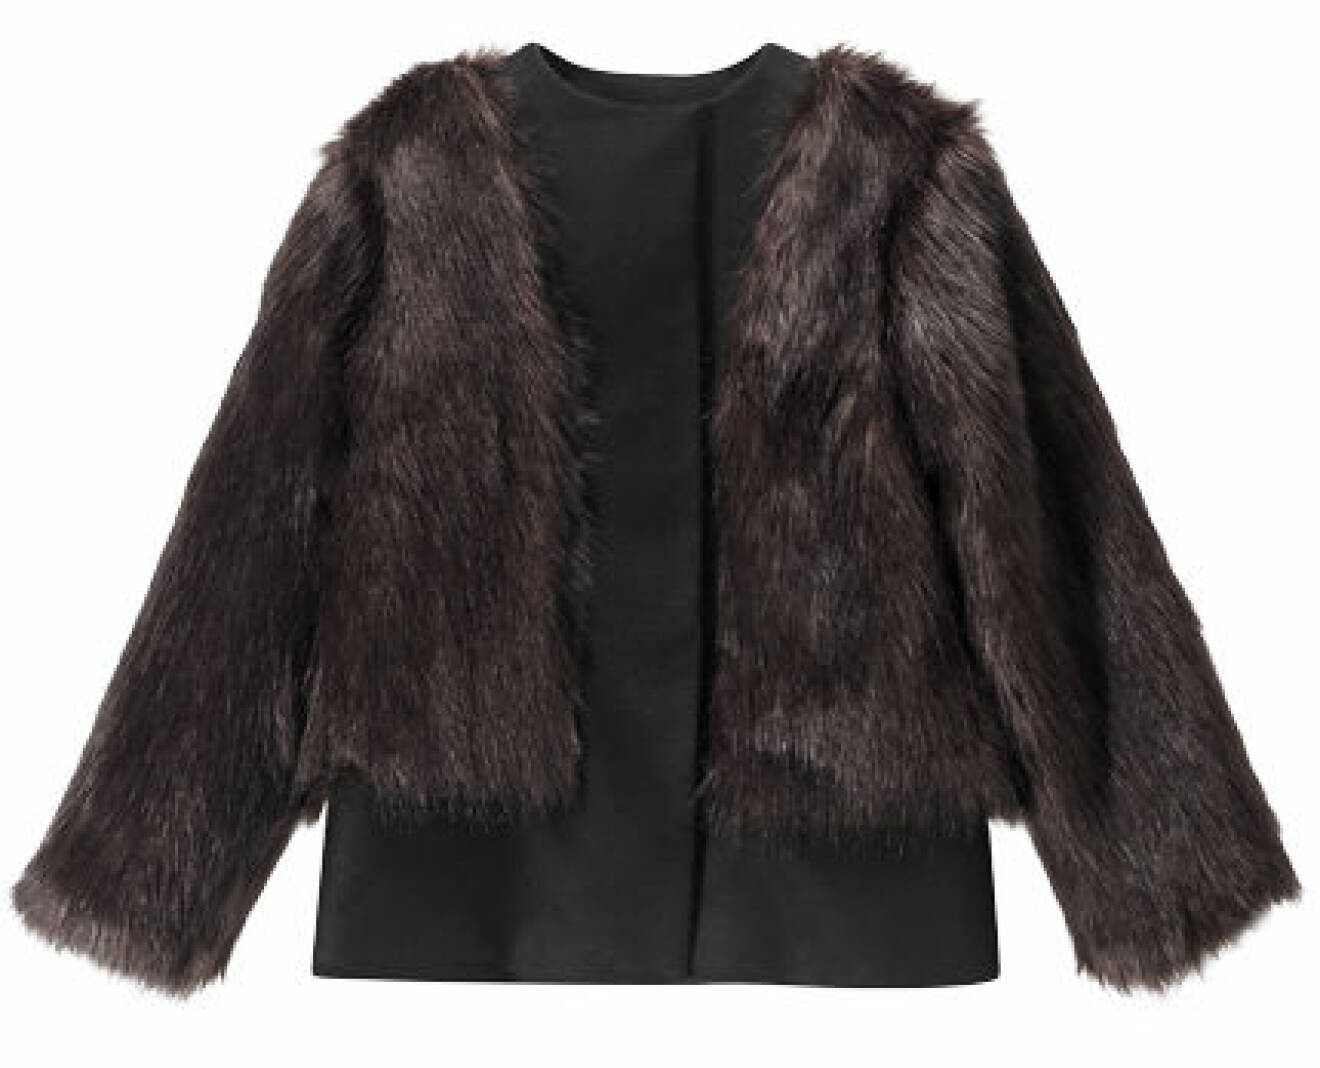 Filippa K Woman AW13 Lana Fake Fur Jacket coffee 4200 SEK_4200 NOK_3800 DKK